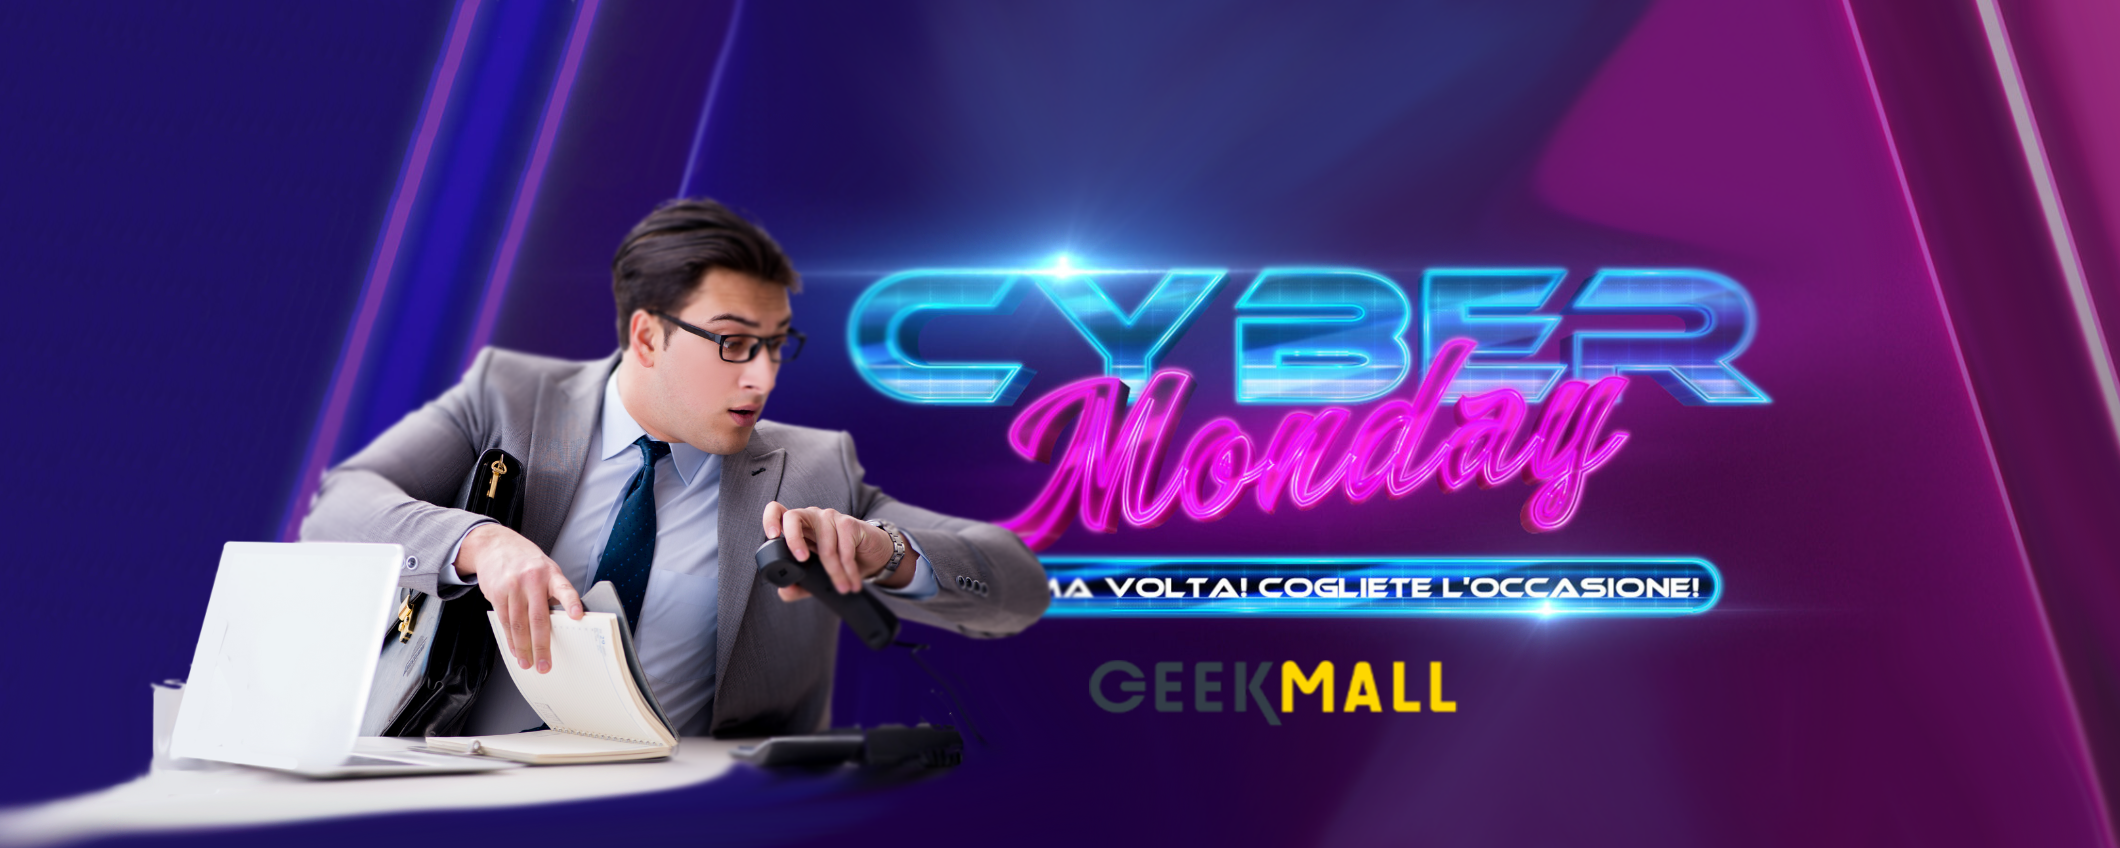 Cyber Monday 2023 su Geekmall: sconti unici su Tecnologia e Lifestyle